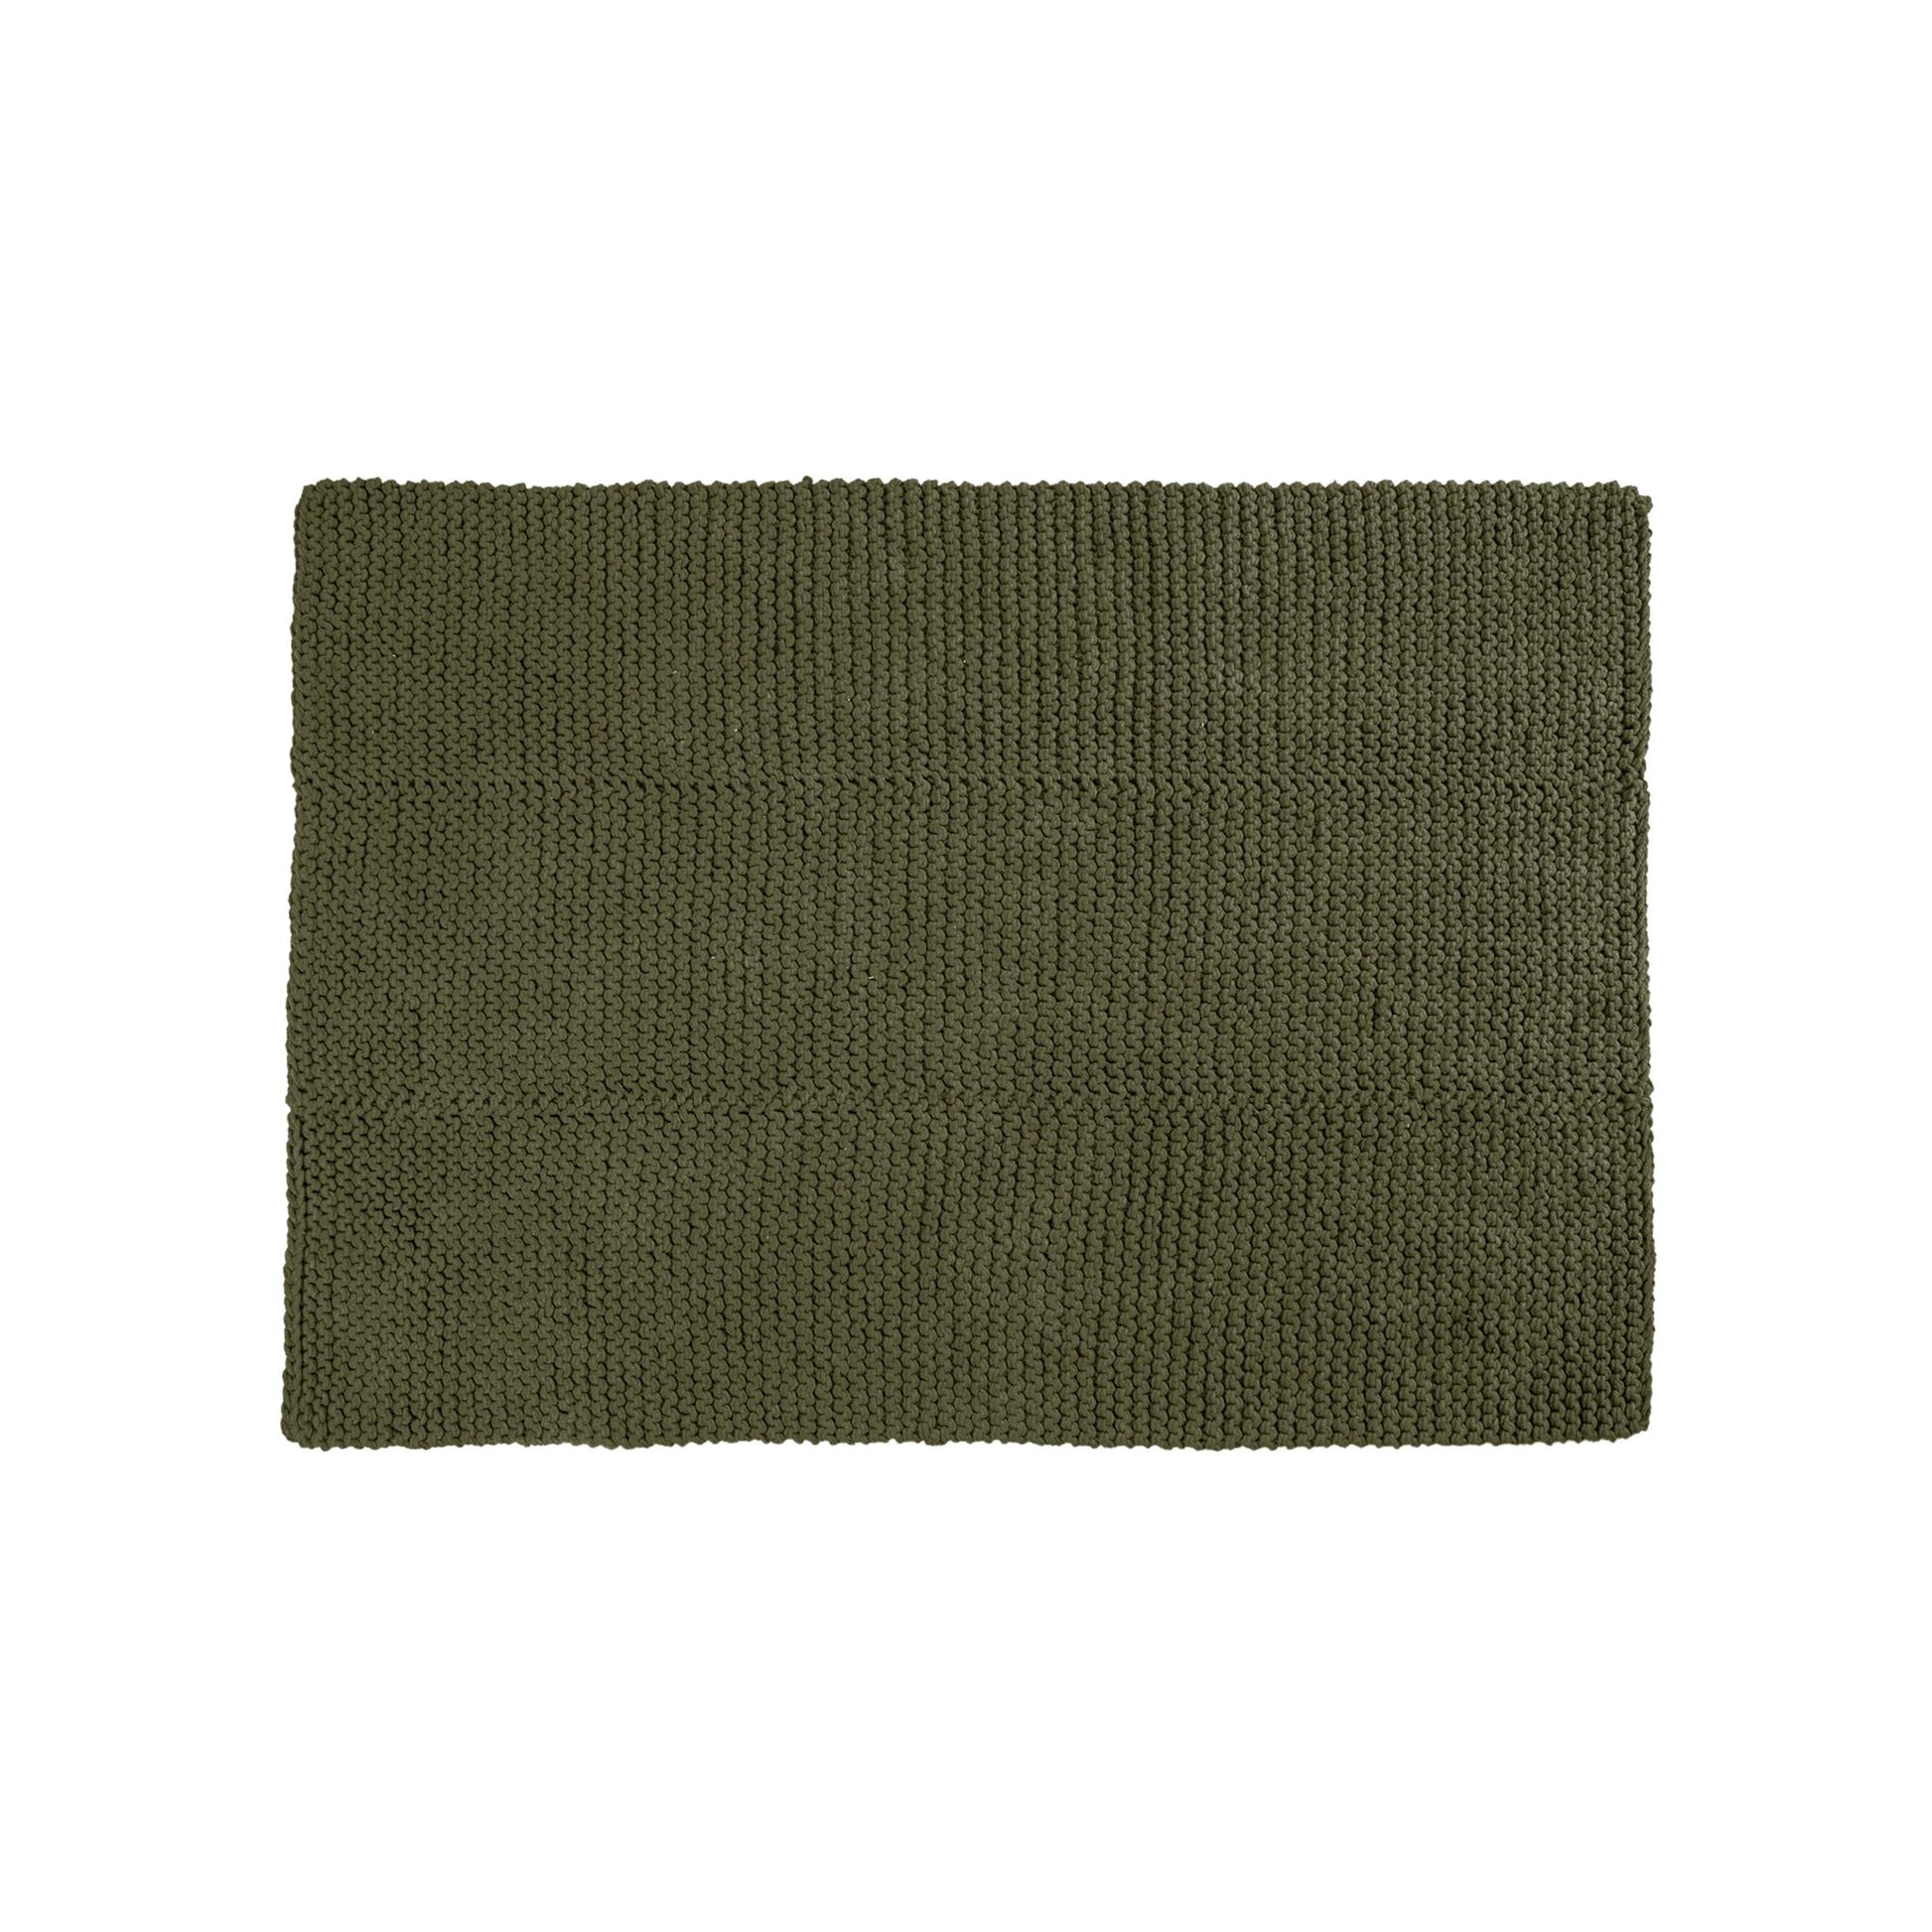 Tapete em tricô artesanal Verde, com fio 100% algodão. Dimensões: Largura - 150cm; Comprimento - 200cm. 